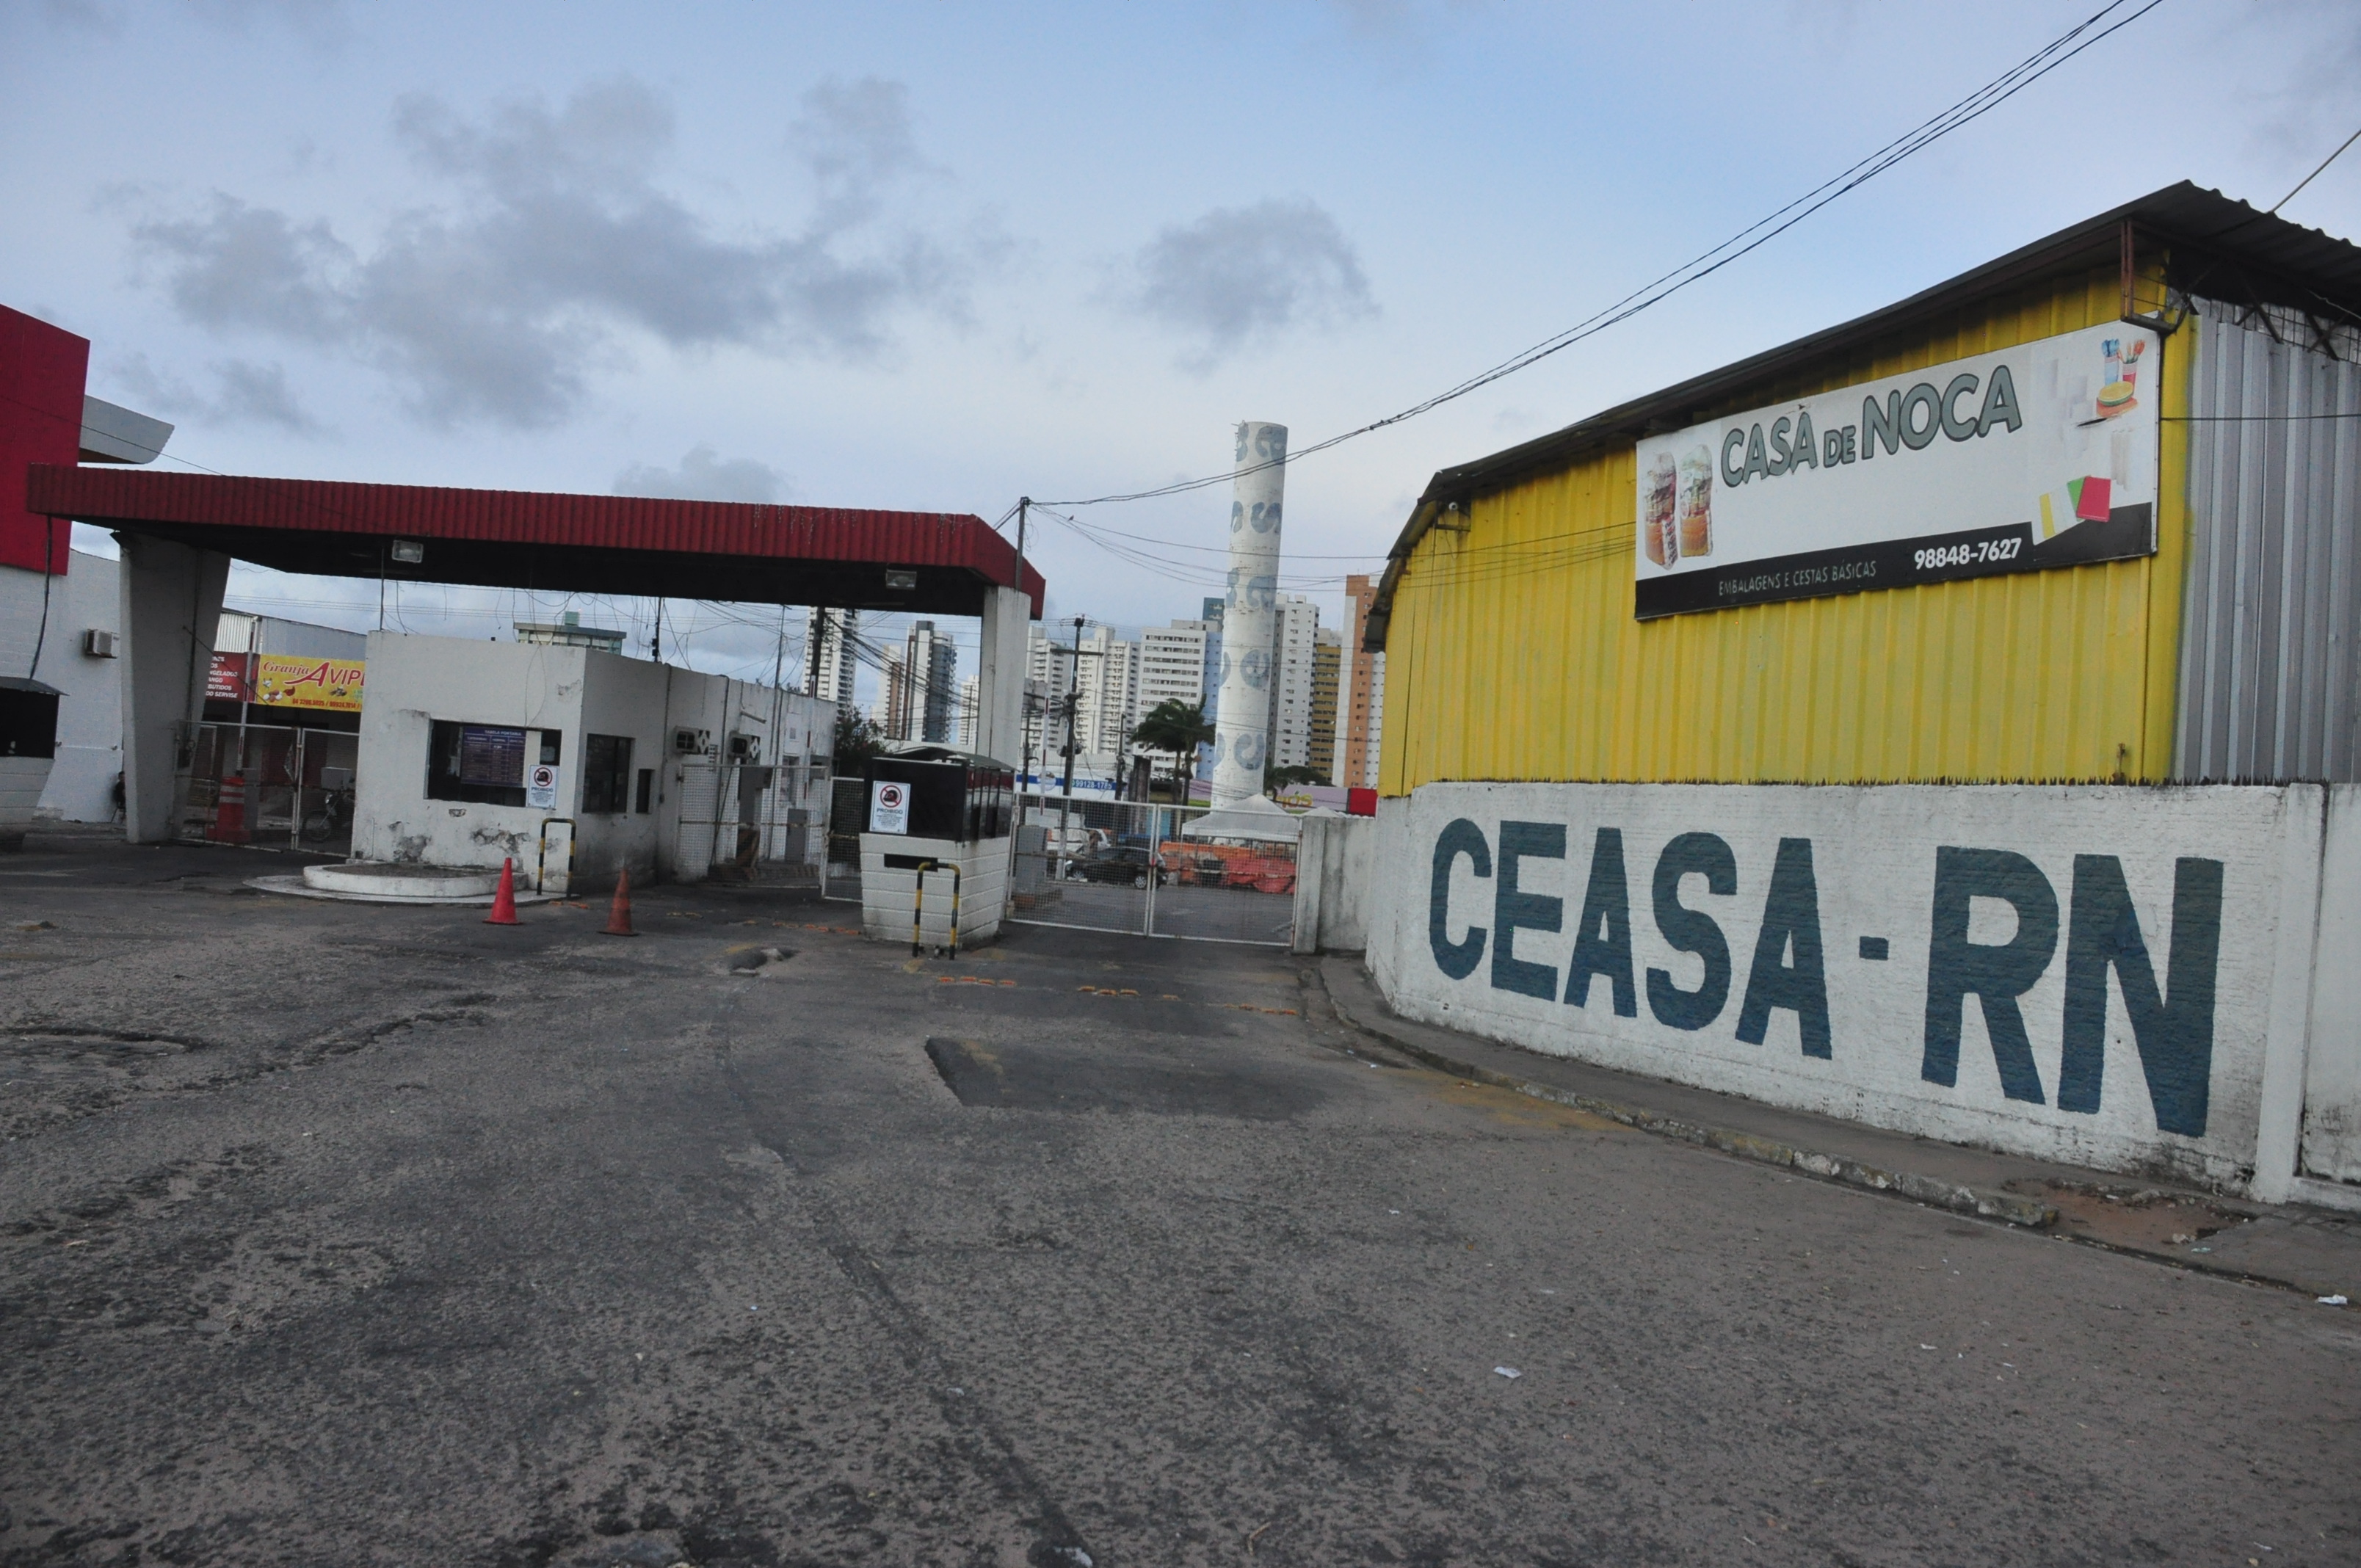 Agora RN Ceasa-RN suspende acesso de ambulantes e fecha feirinha ...